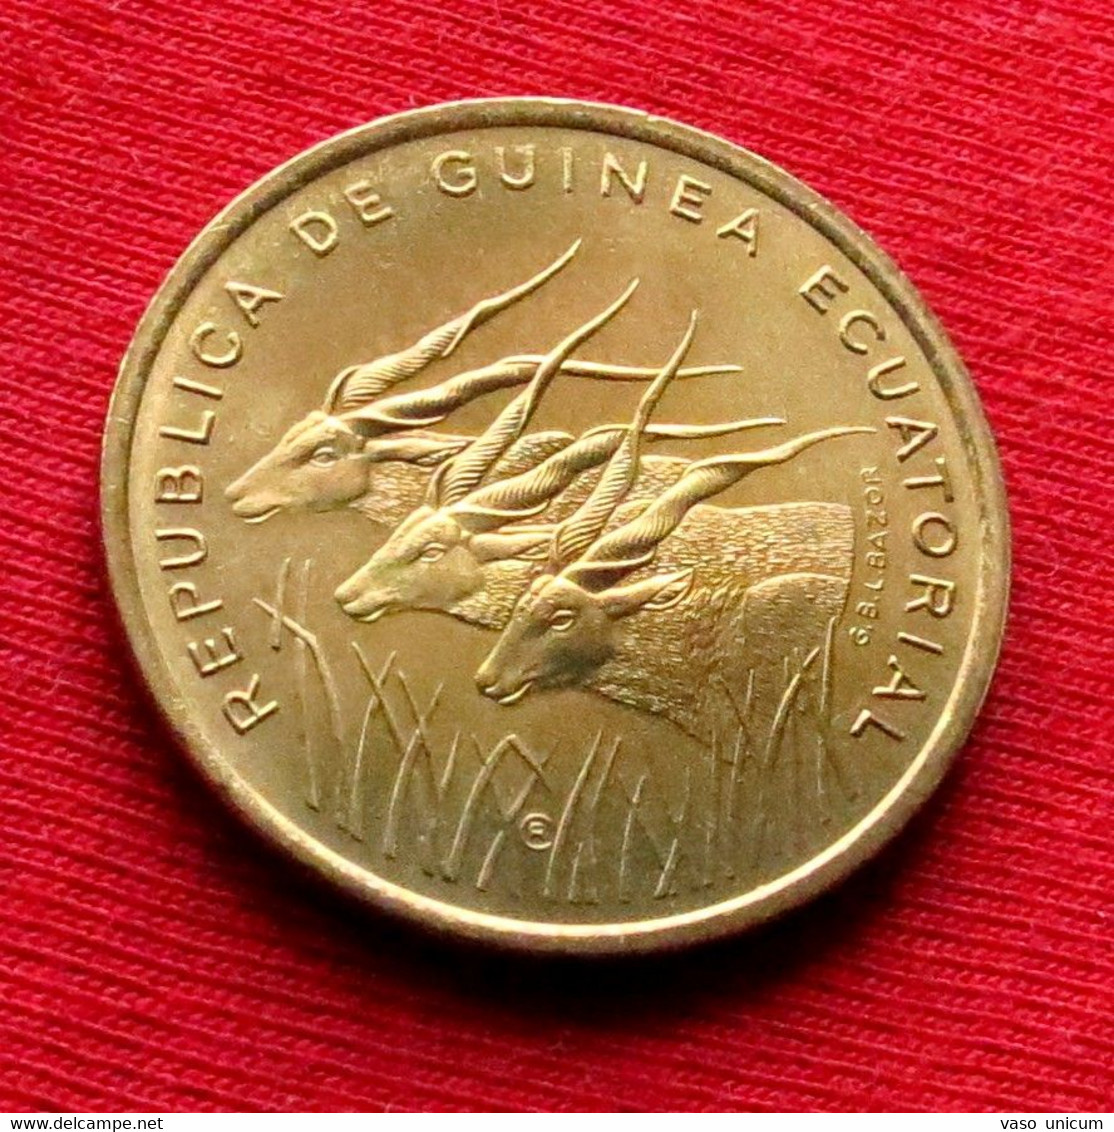 Equatorial Guinea 25 Francs 1985 Unc - Guinea Ecuatorial